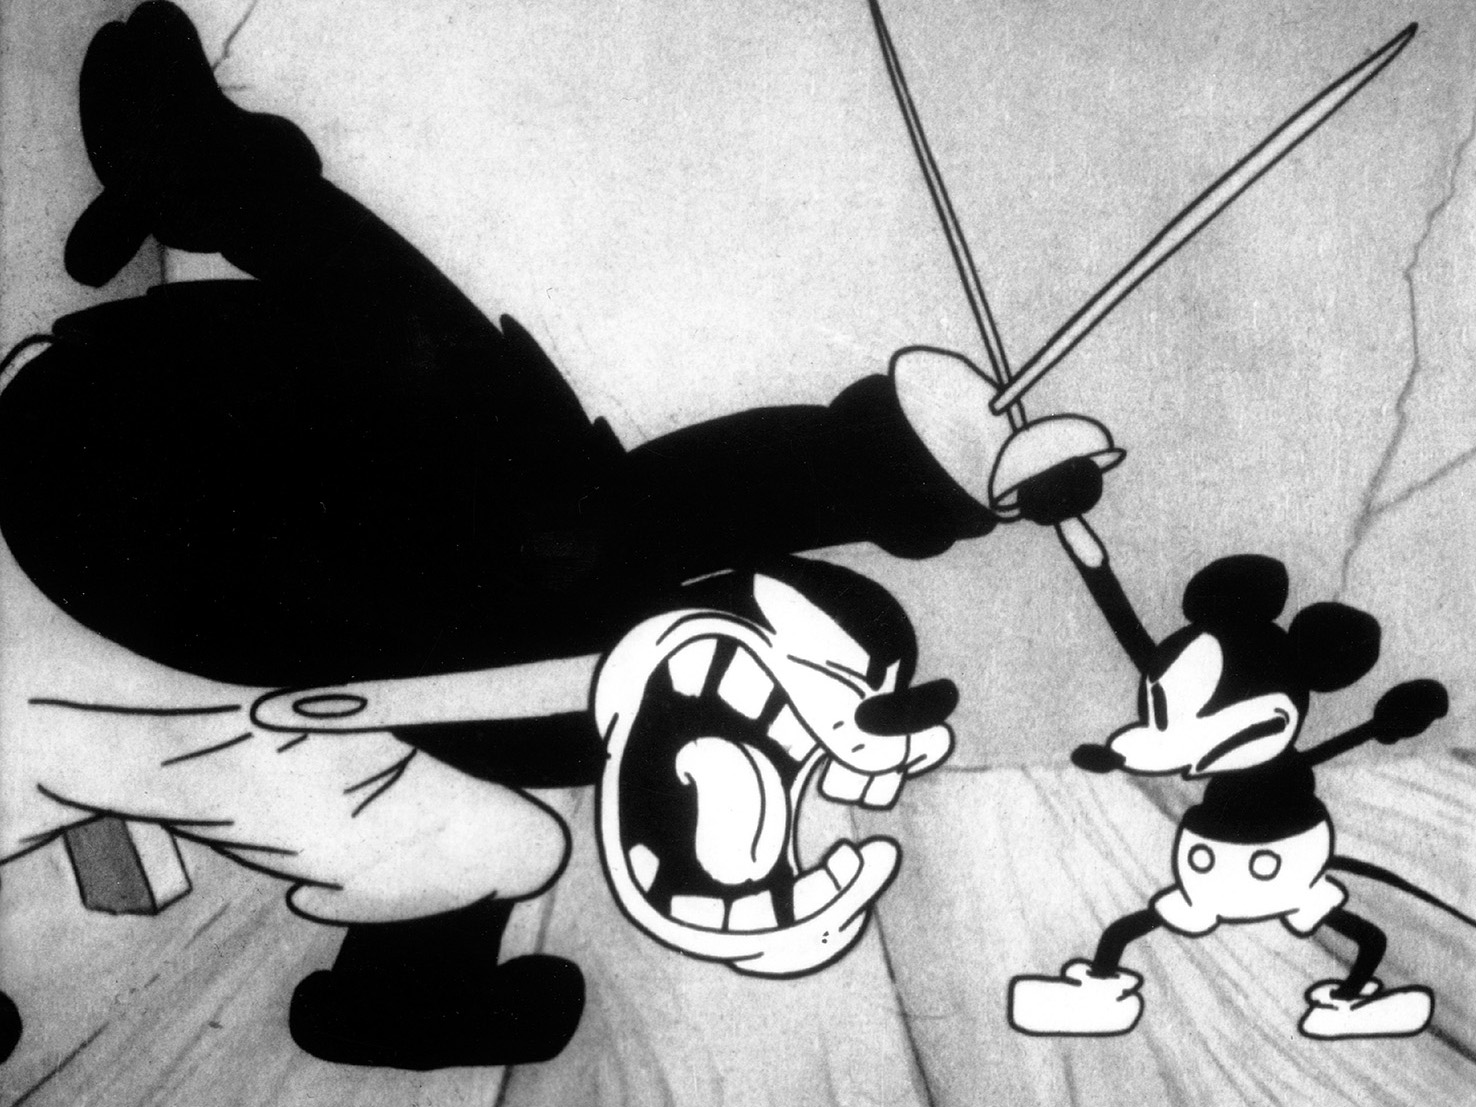 9 décadas de Mickey: 10 curiosidades sobre o personagem